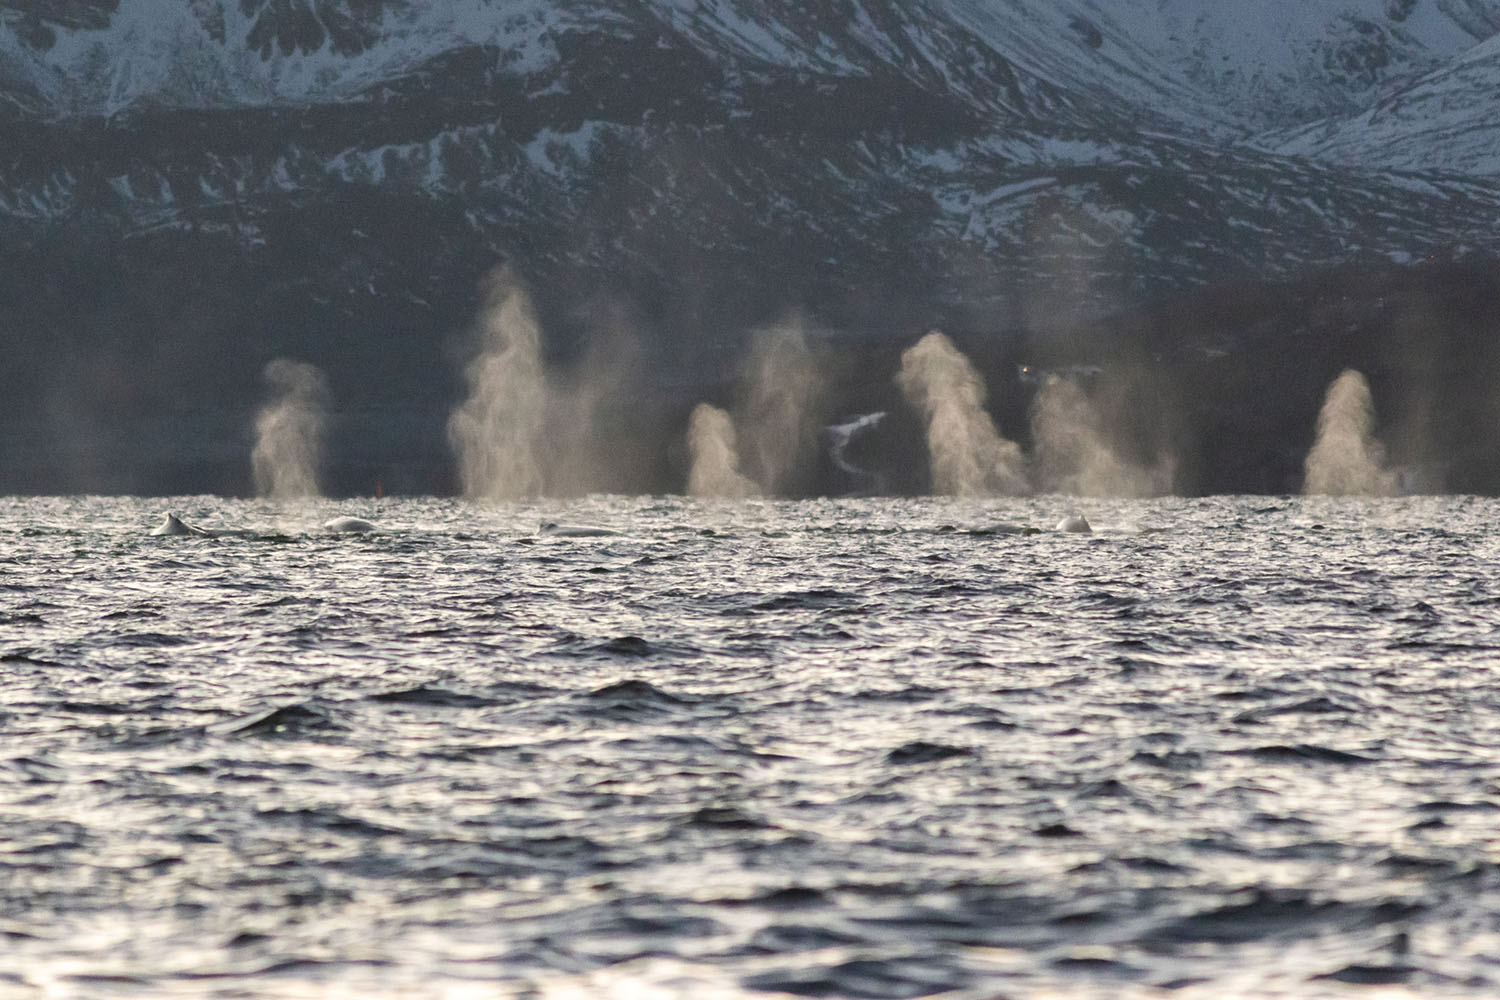 voyage scientifique - orques et baleines a bosse de norvege 39